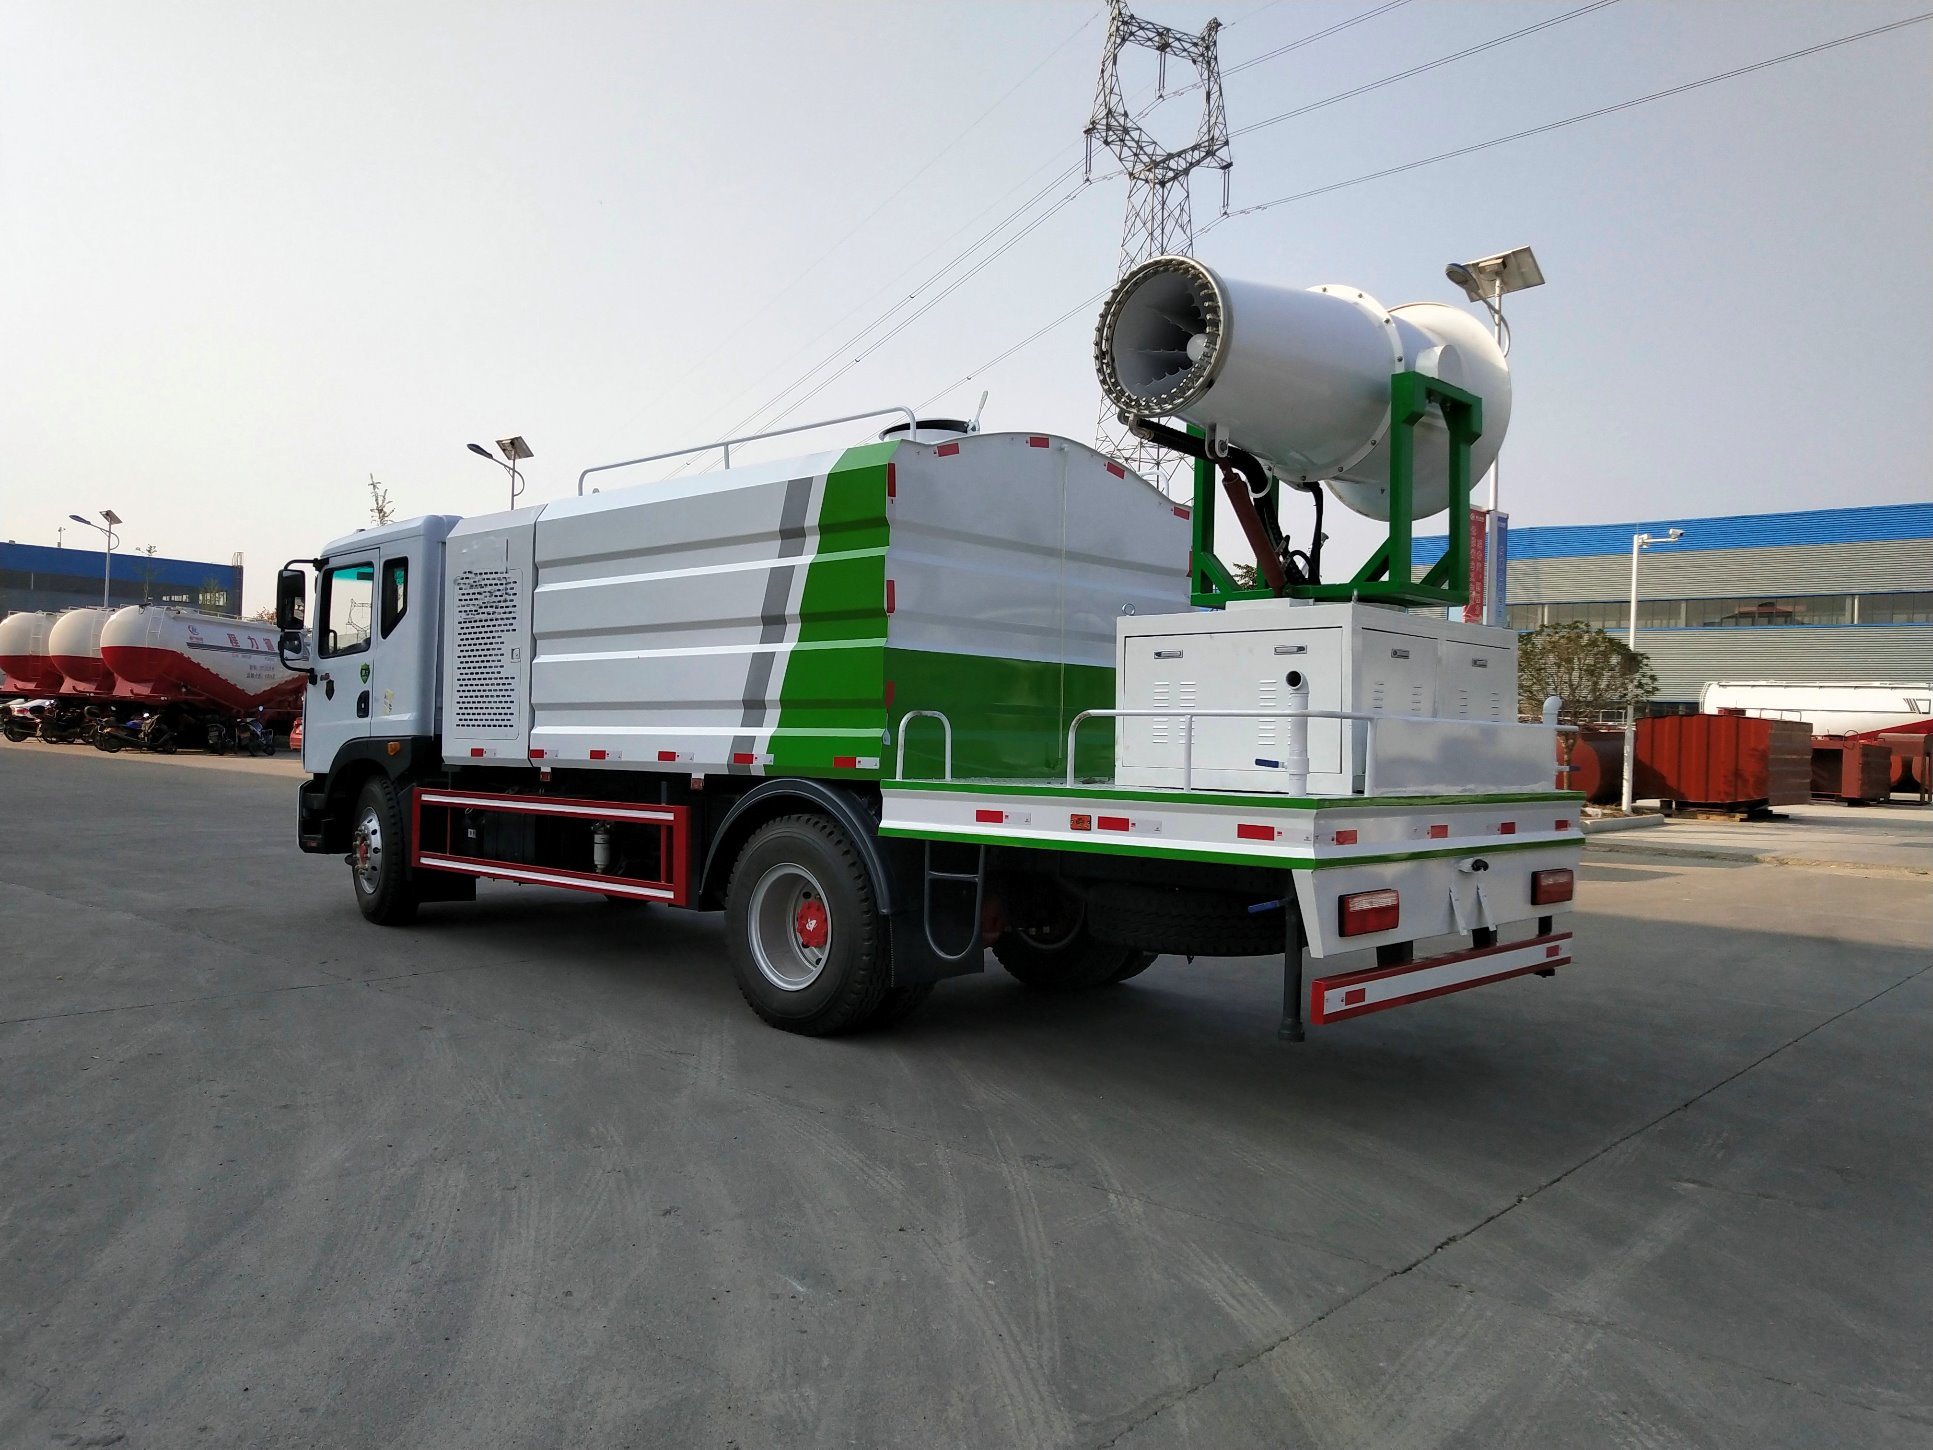 
                La niebla de desinfección de cañones de agua Camión Vehículo de supresión de polvo para la venta de camiones de desinfección multifunción
            